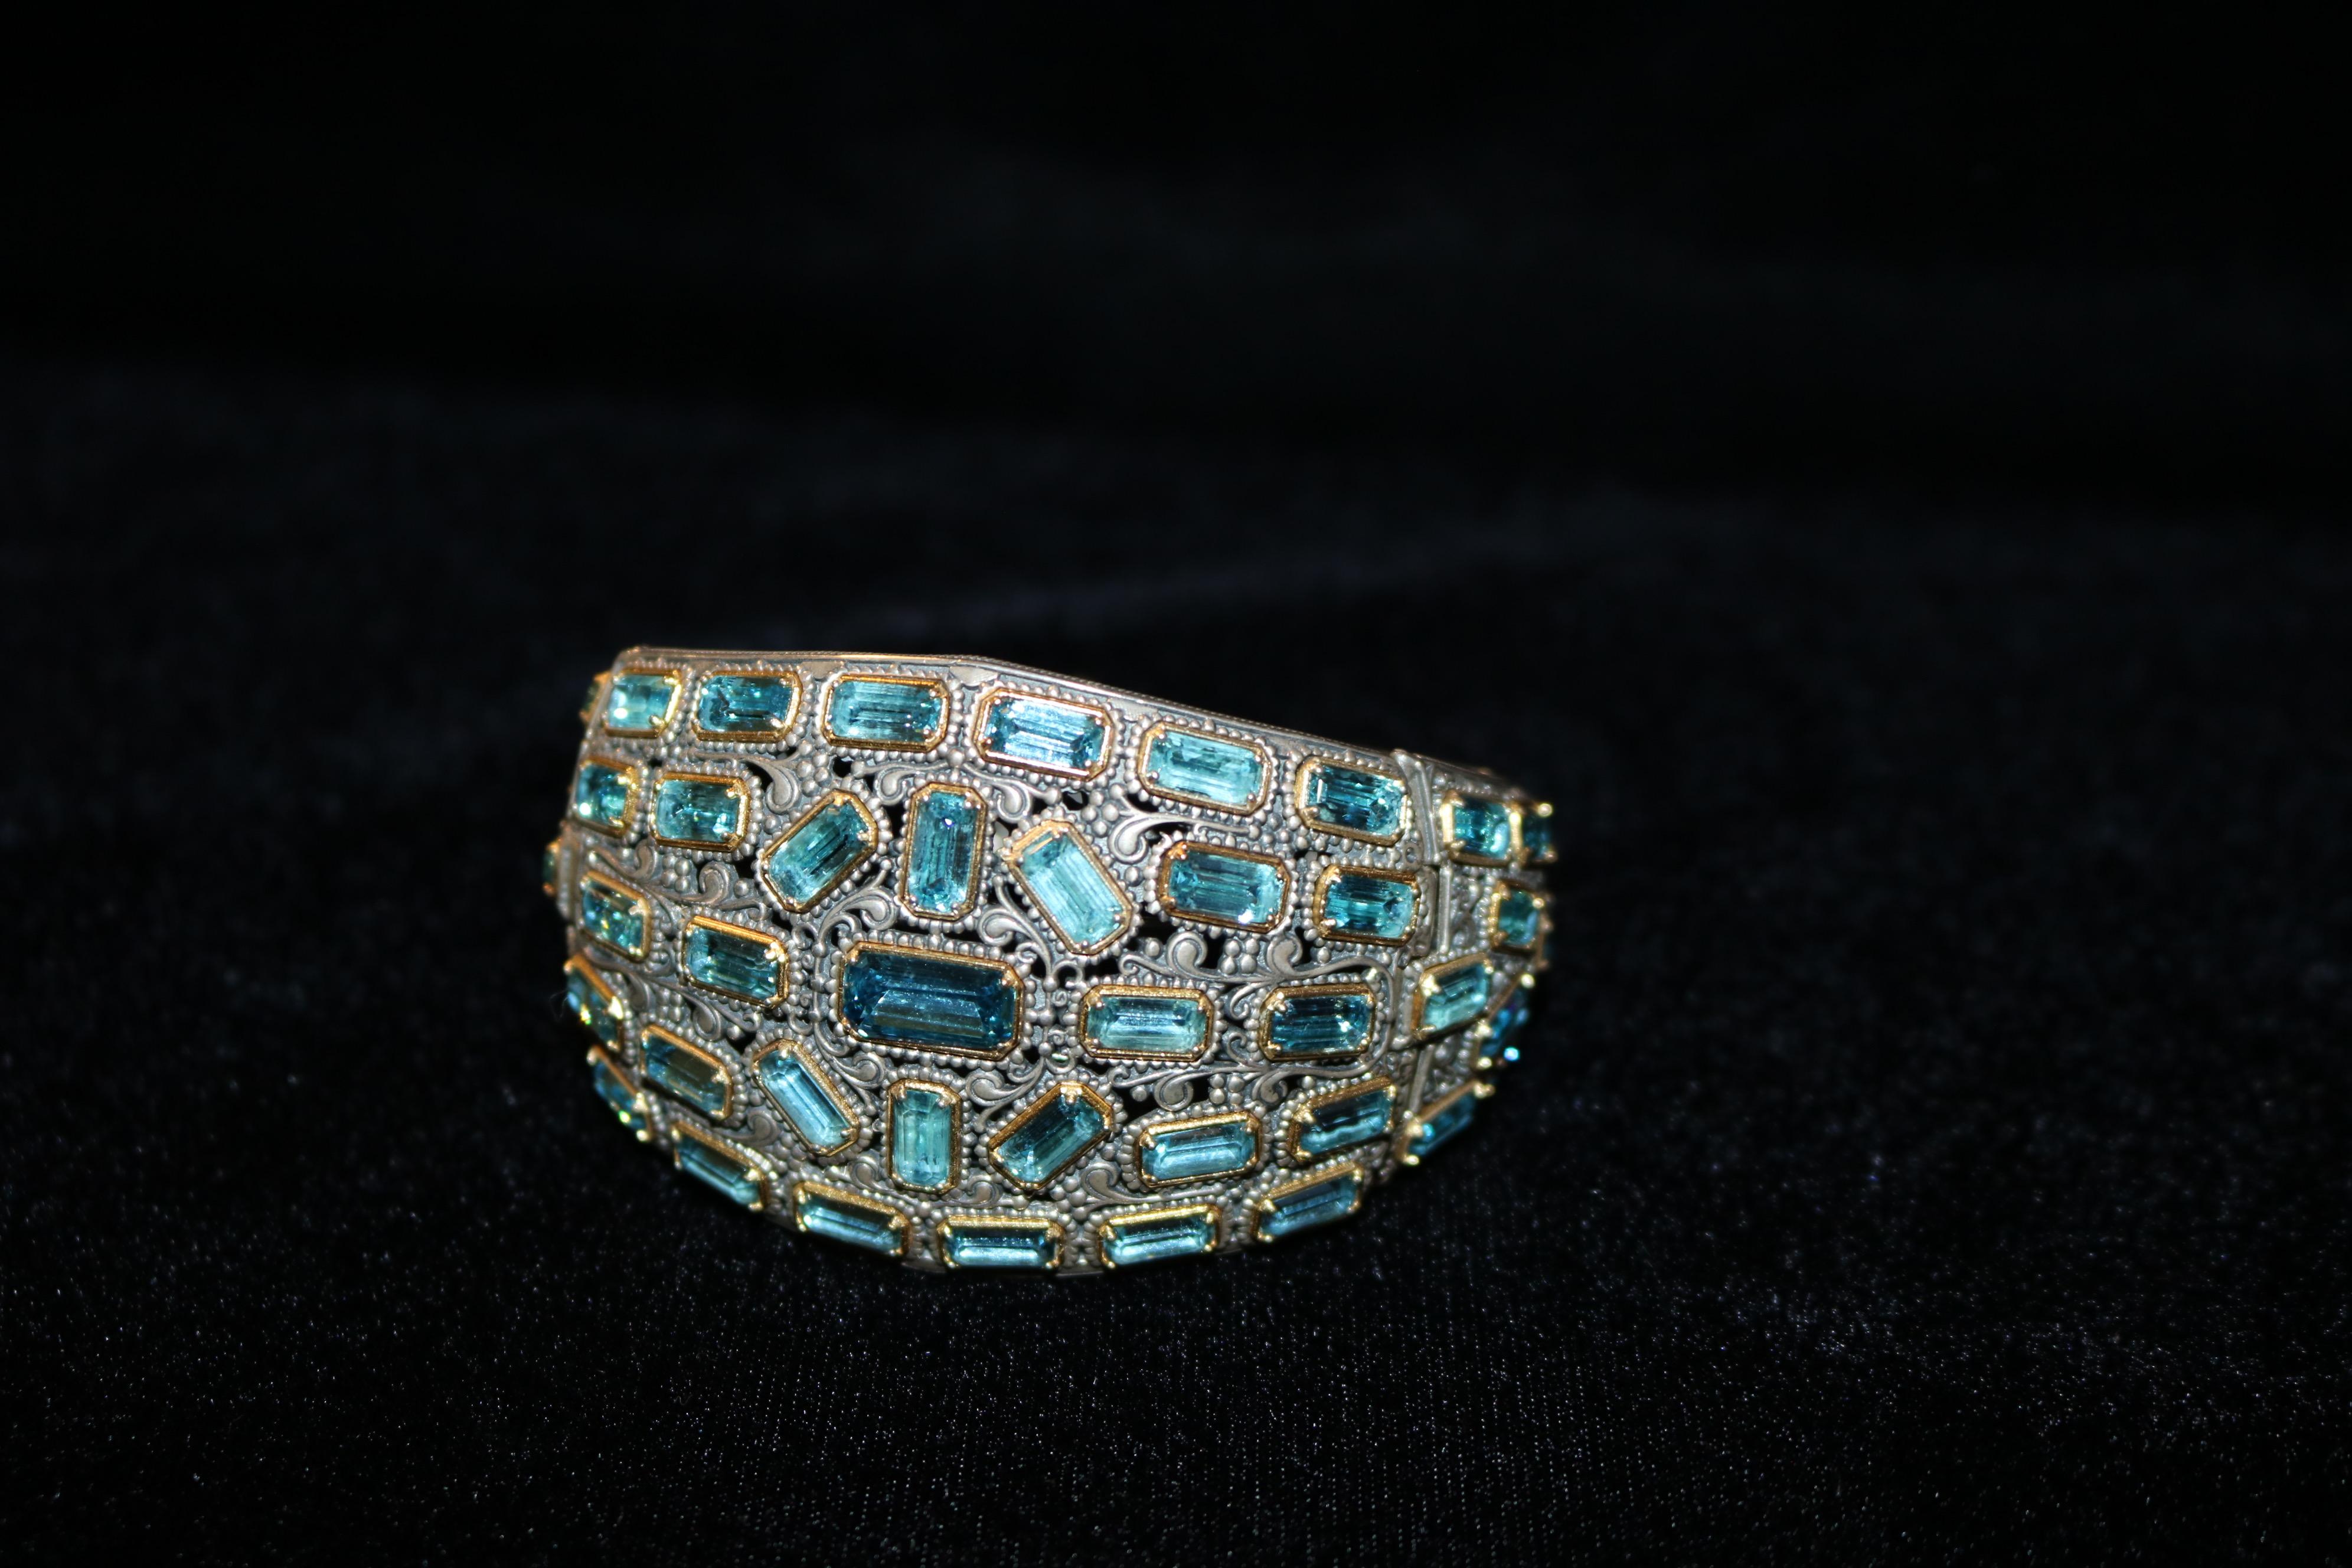 Pièce intemporelle de l'époque Art of Vintage, ce bracelet vintage exquis respire l'élégance et la sophistication.
Fabriquée en argent 925 et en or 18 carats, cette pièce comporte plus de 40 topazes bleues naturelles taillées en émeraude.  ce qui en